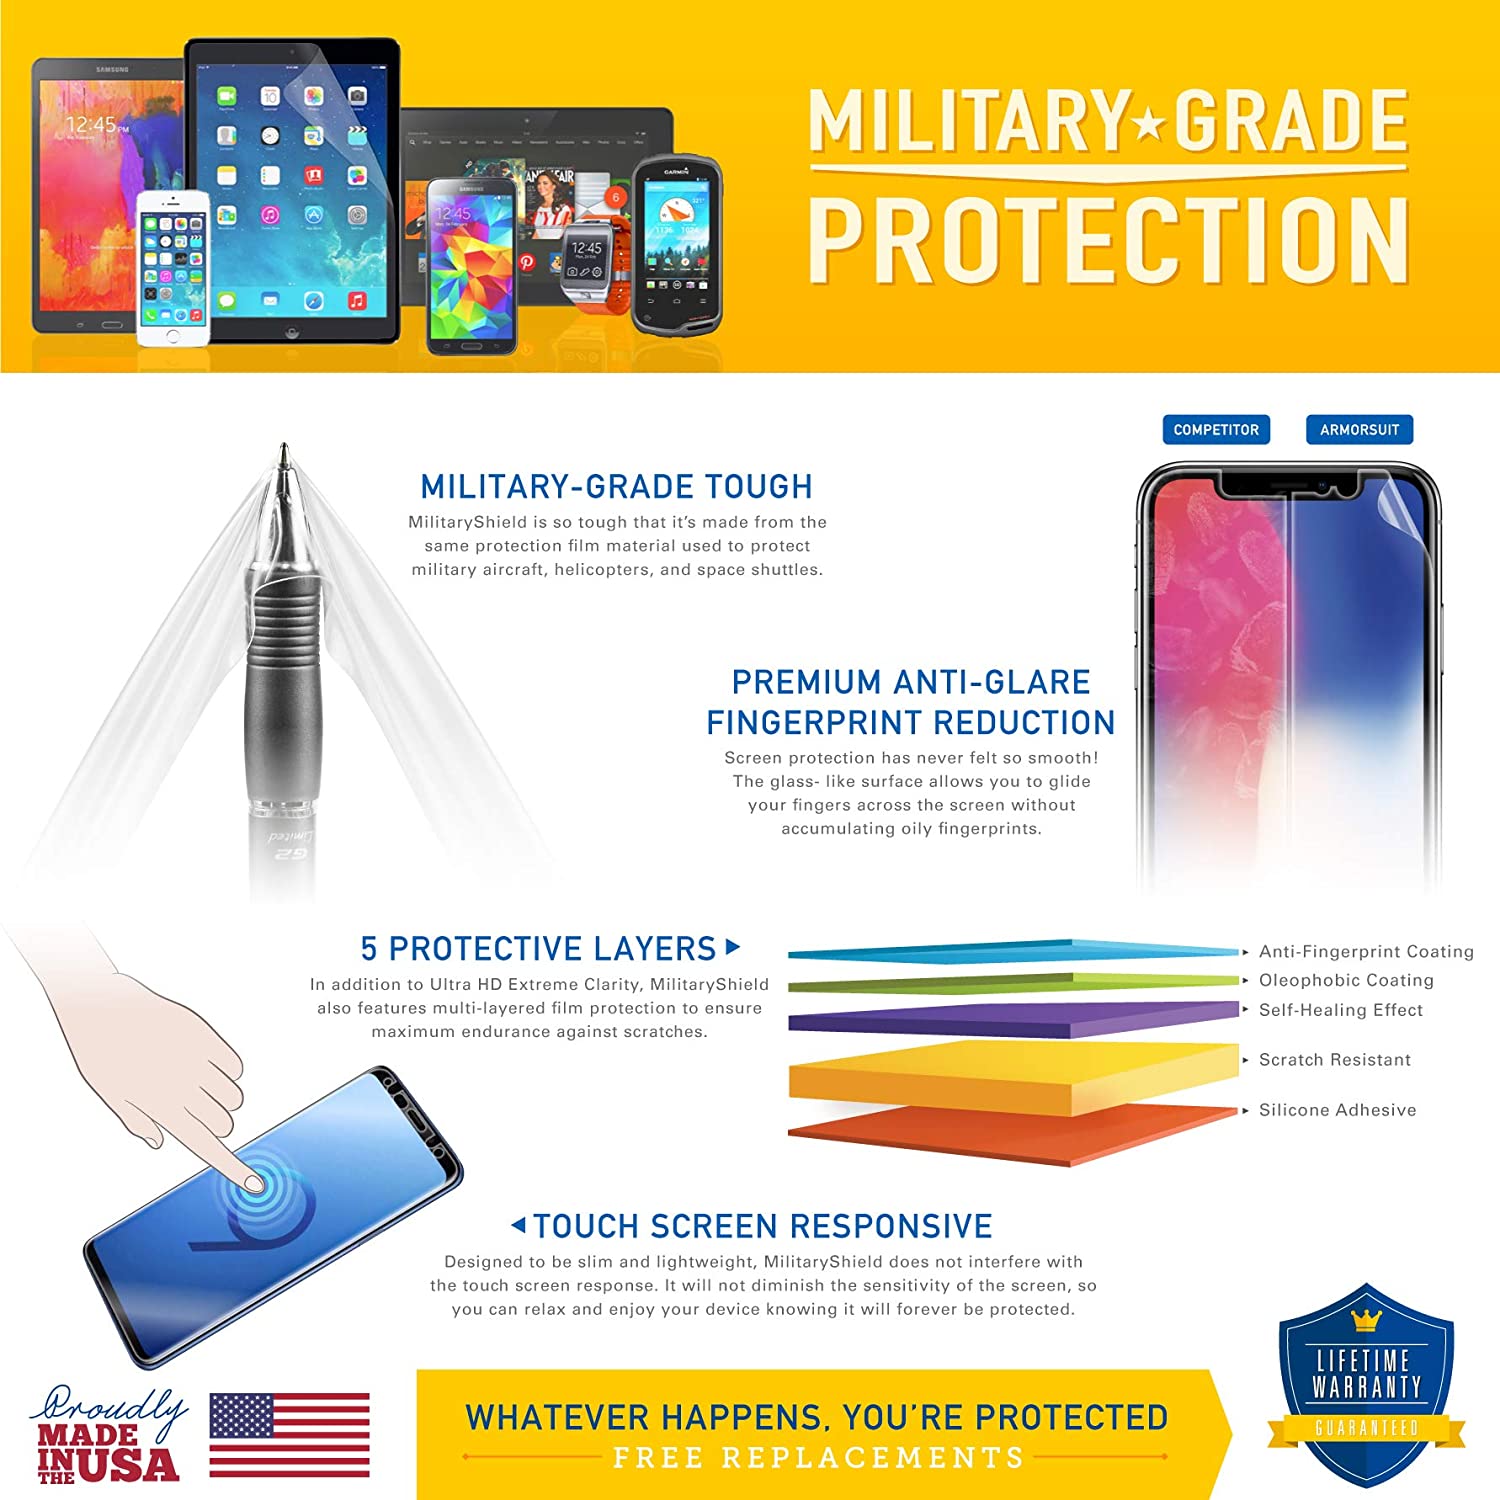 Samsung Galaxy Tab 3 10.1 Full Body Skin Protector